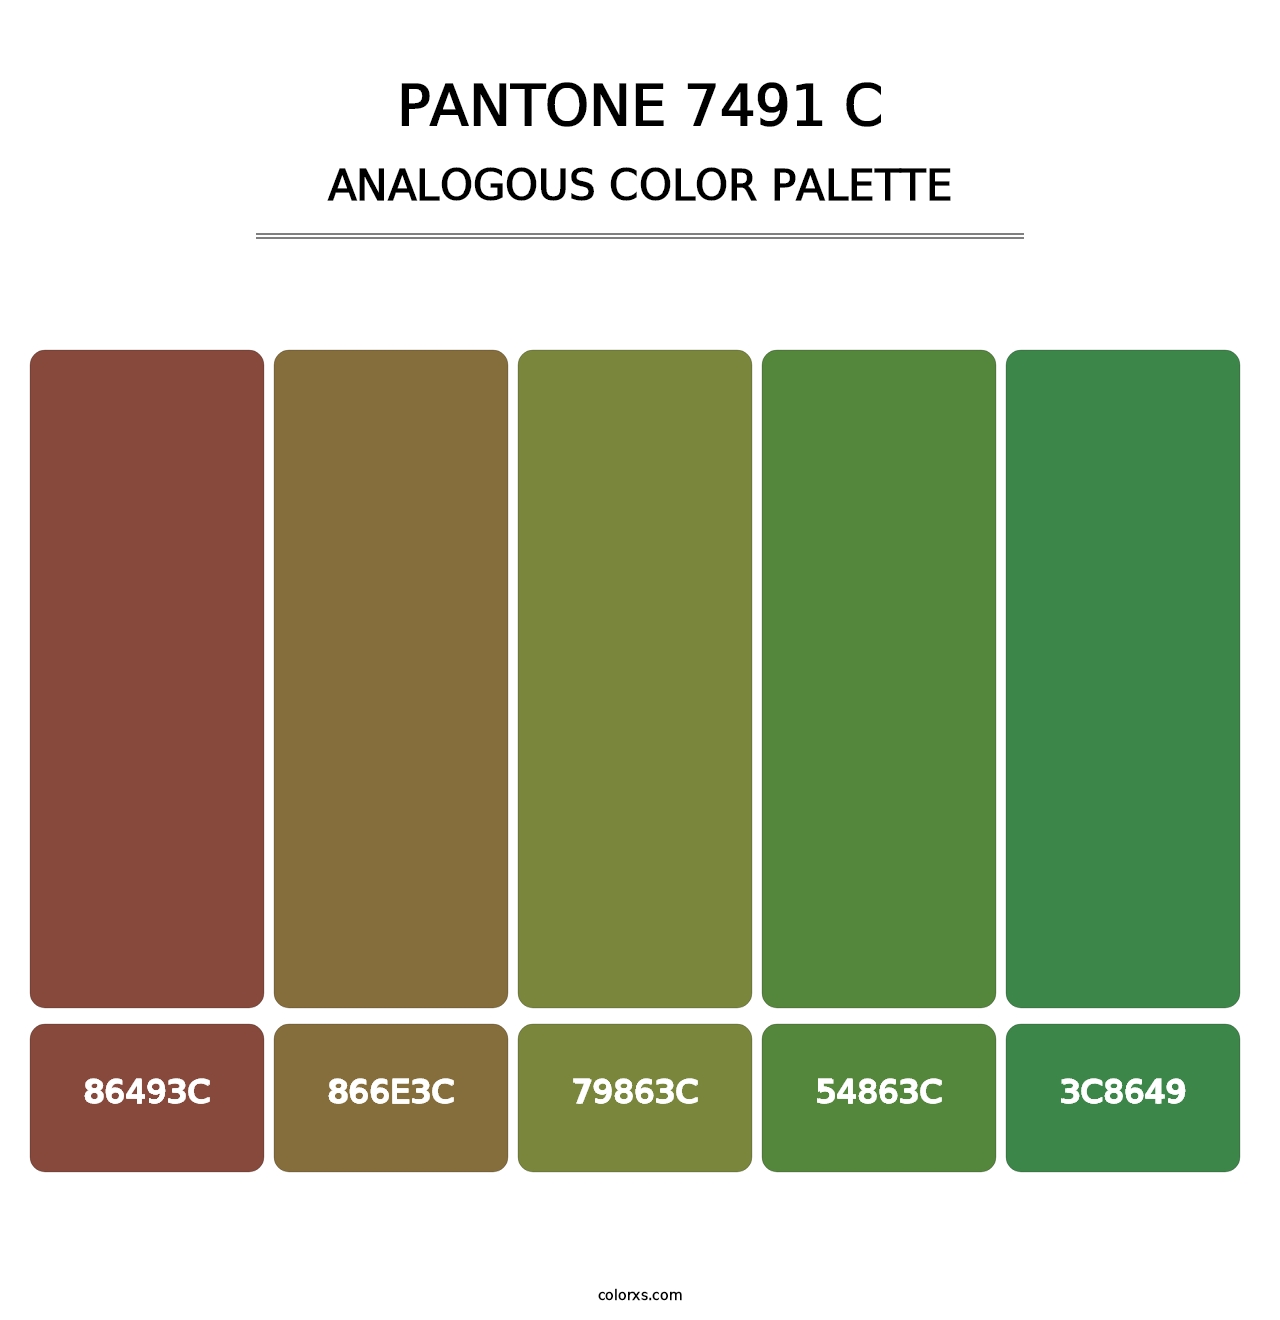 PANTONE 7491 C - Analogous Color Palette